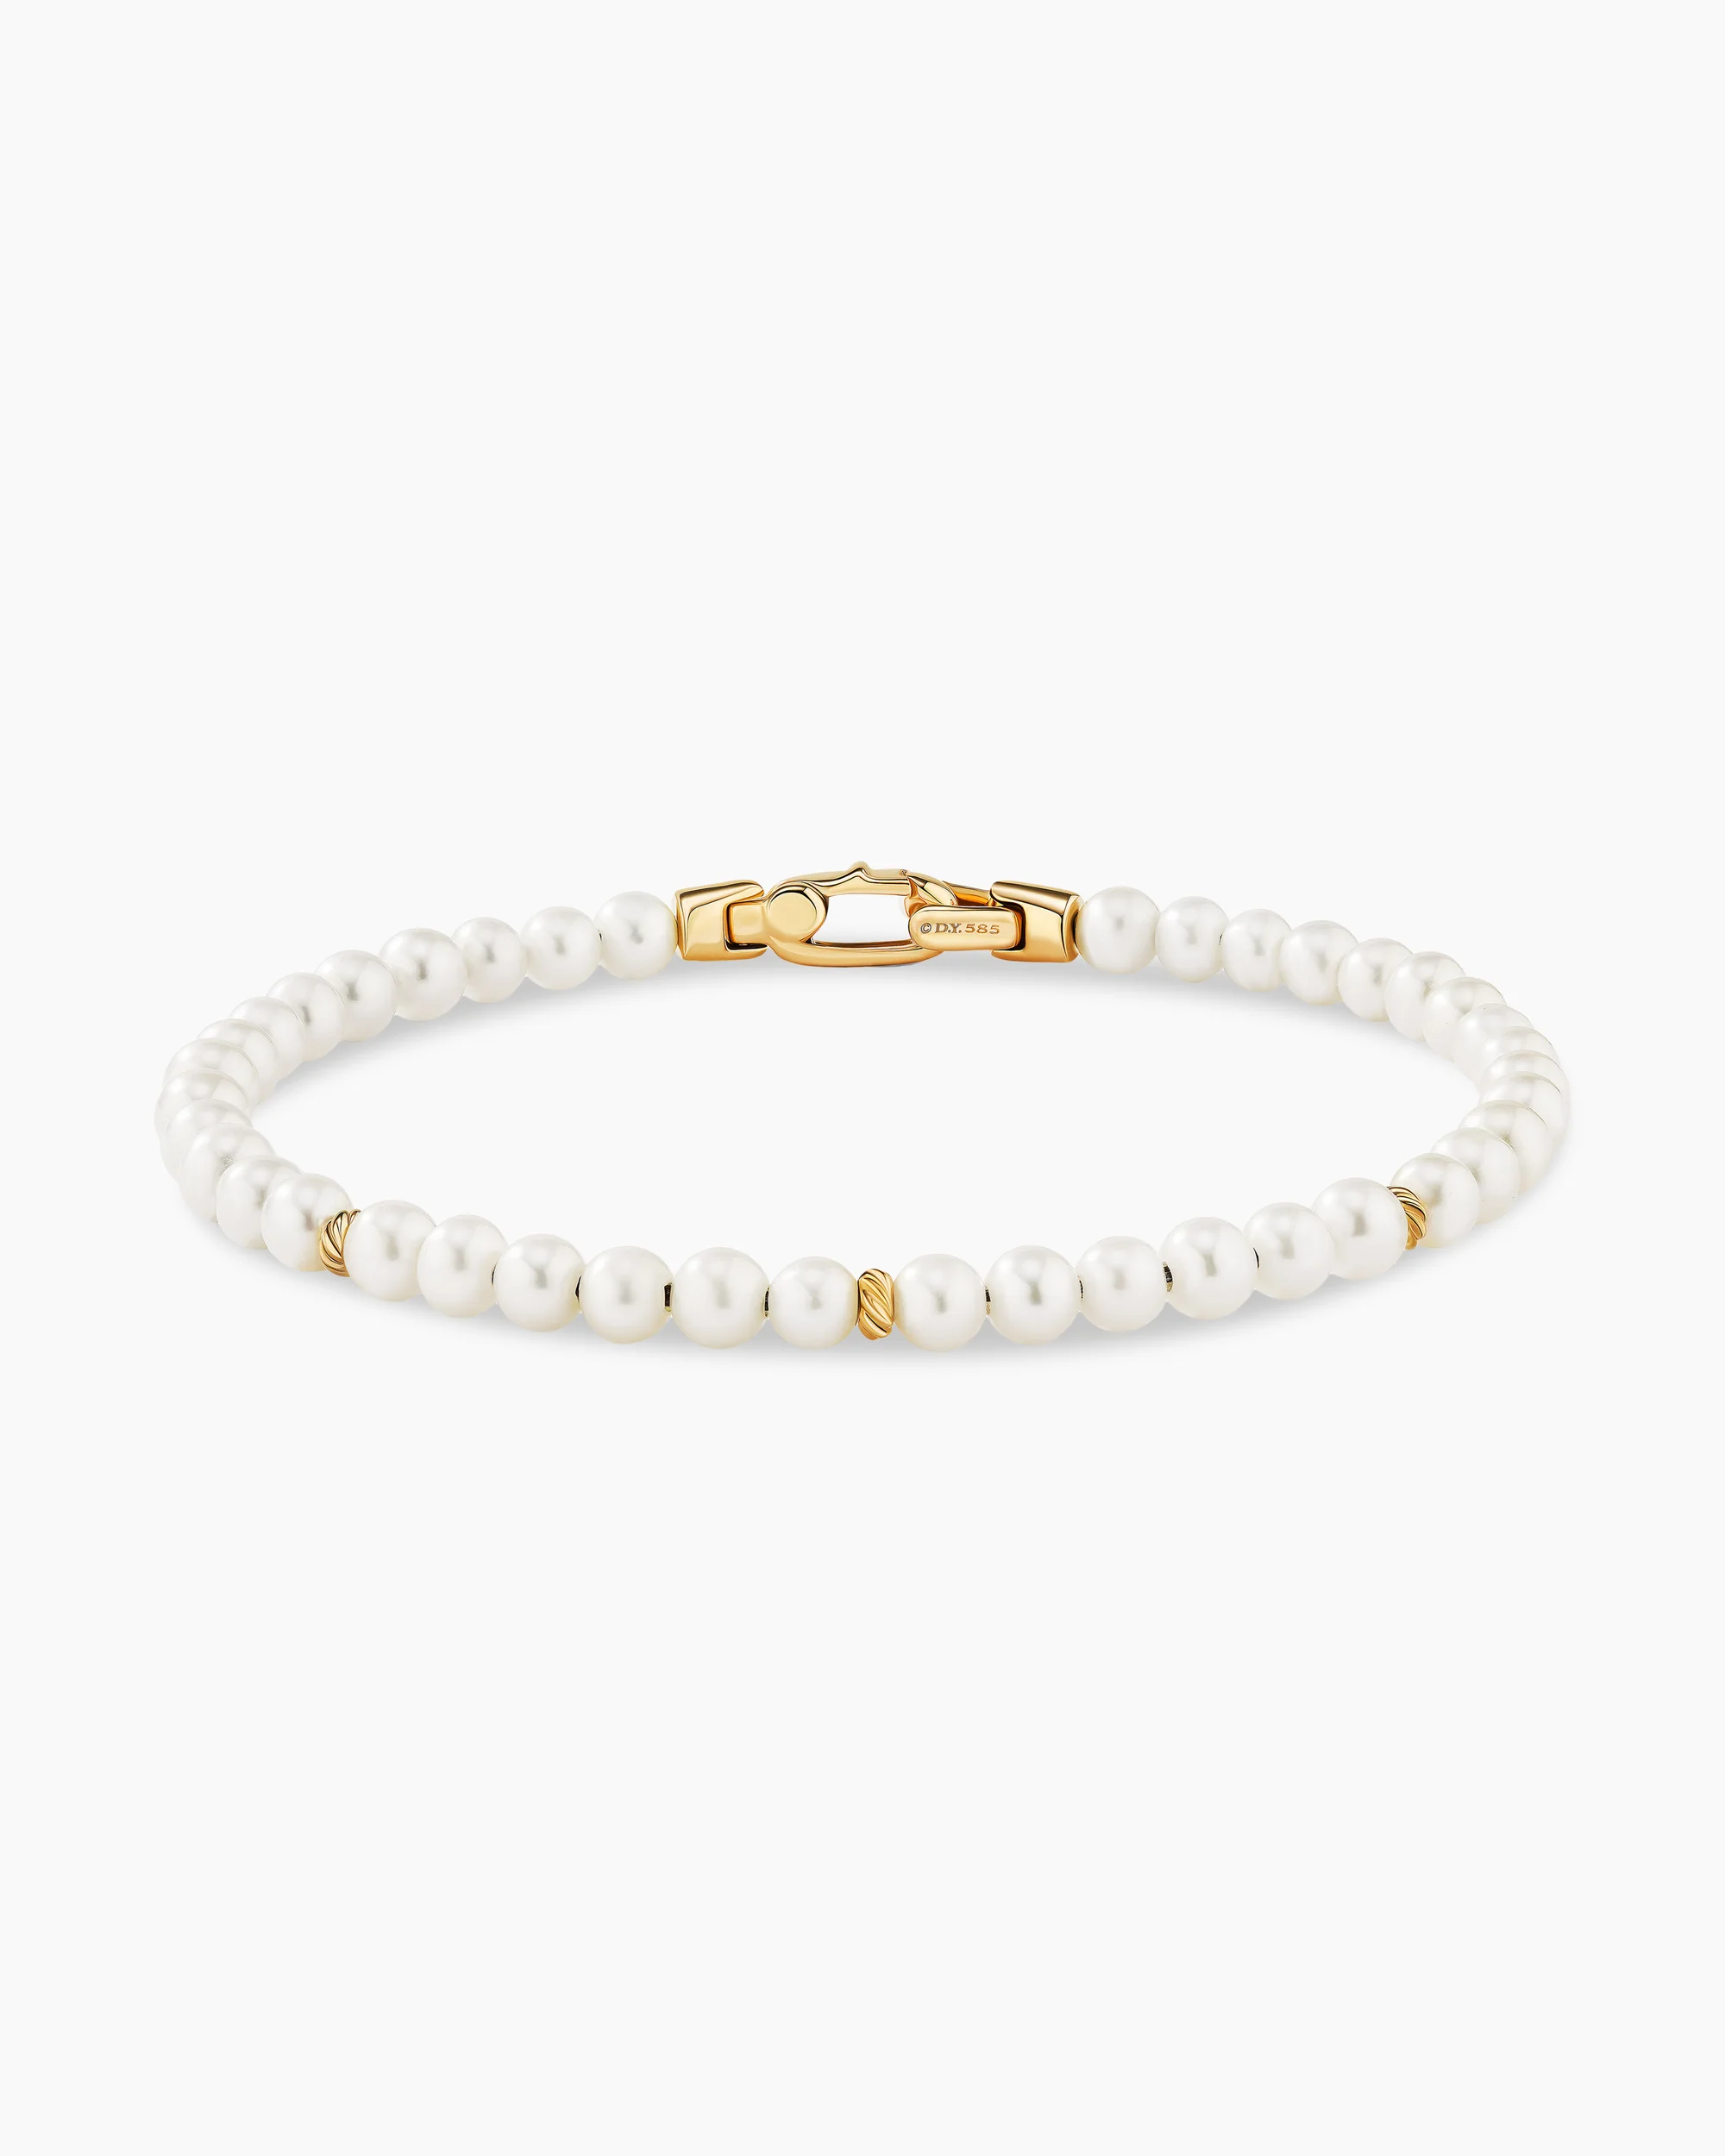 DAVID YURMAN Bijoux Spiritual Beads Bracelet, 14k Yellow Gold & Pearls.webp